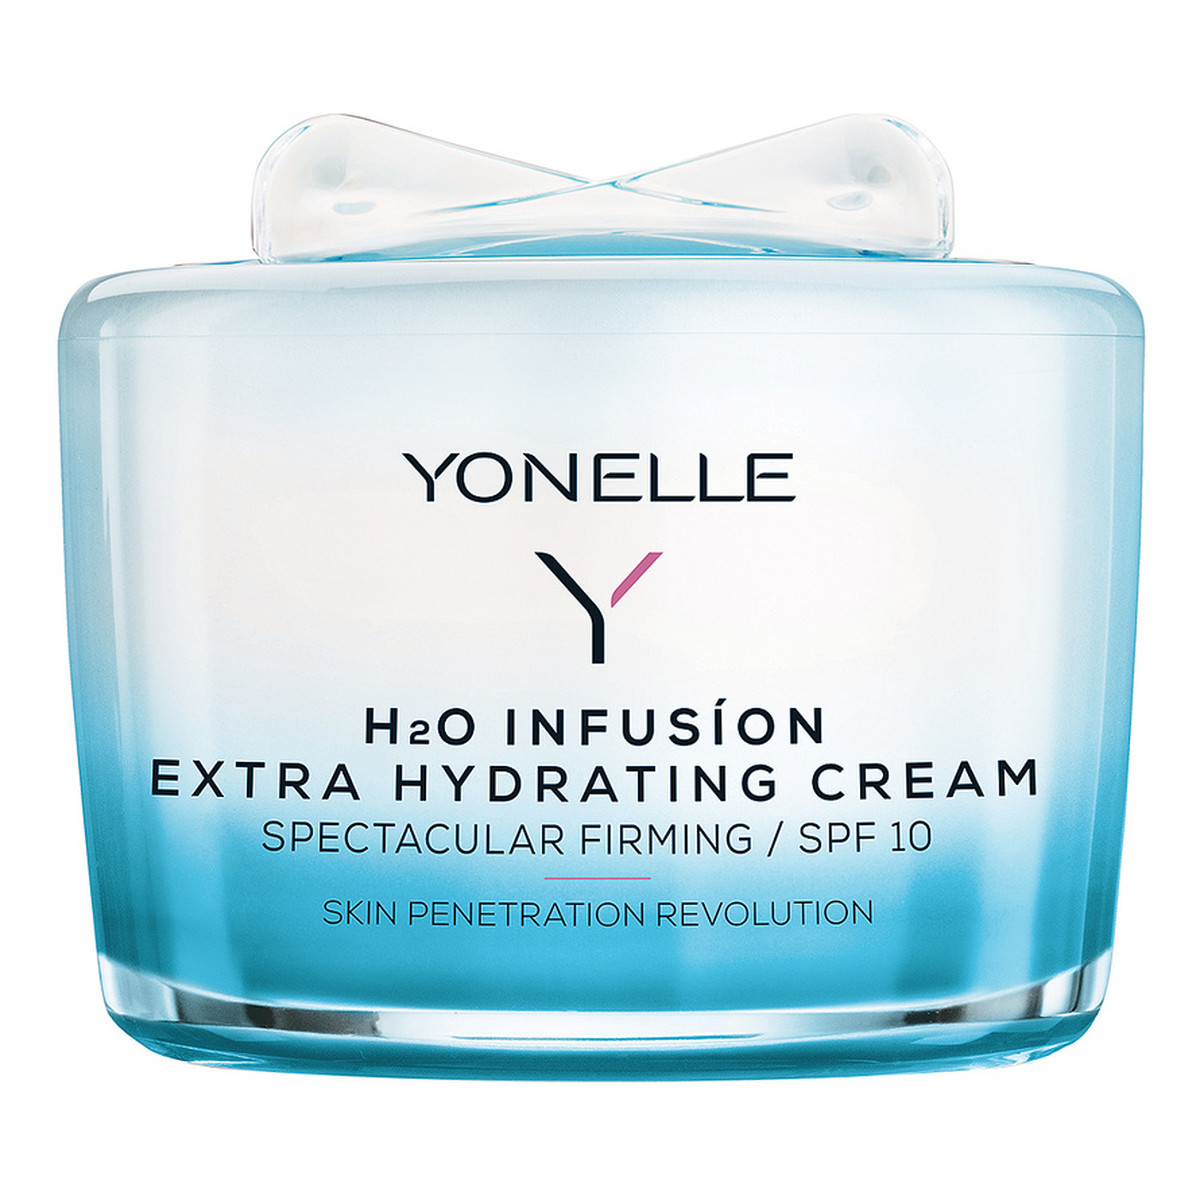 Yonelle H2O Infusion Extra Hydrating Cream SPF10 nawilżający krem do skóry dojrzałej 55ml